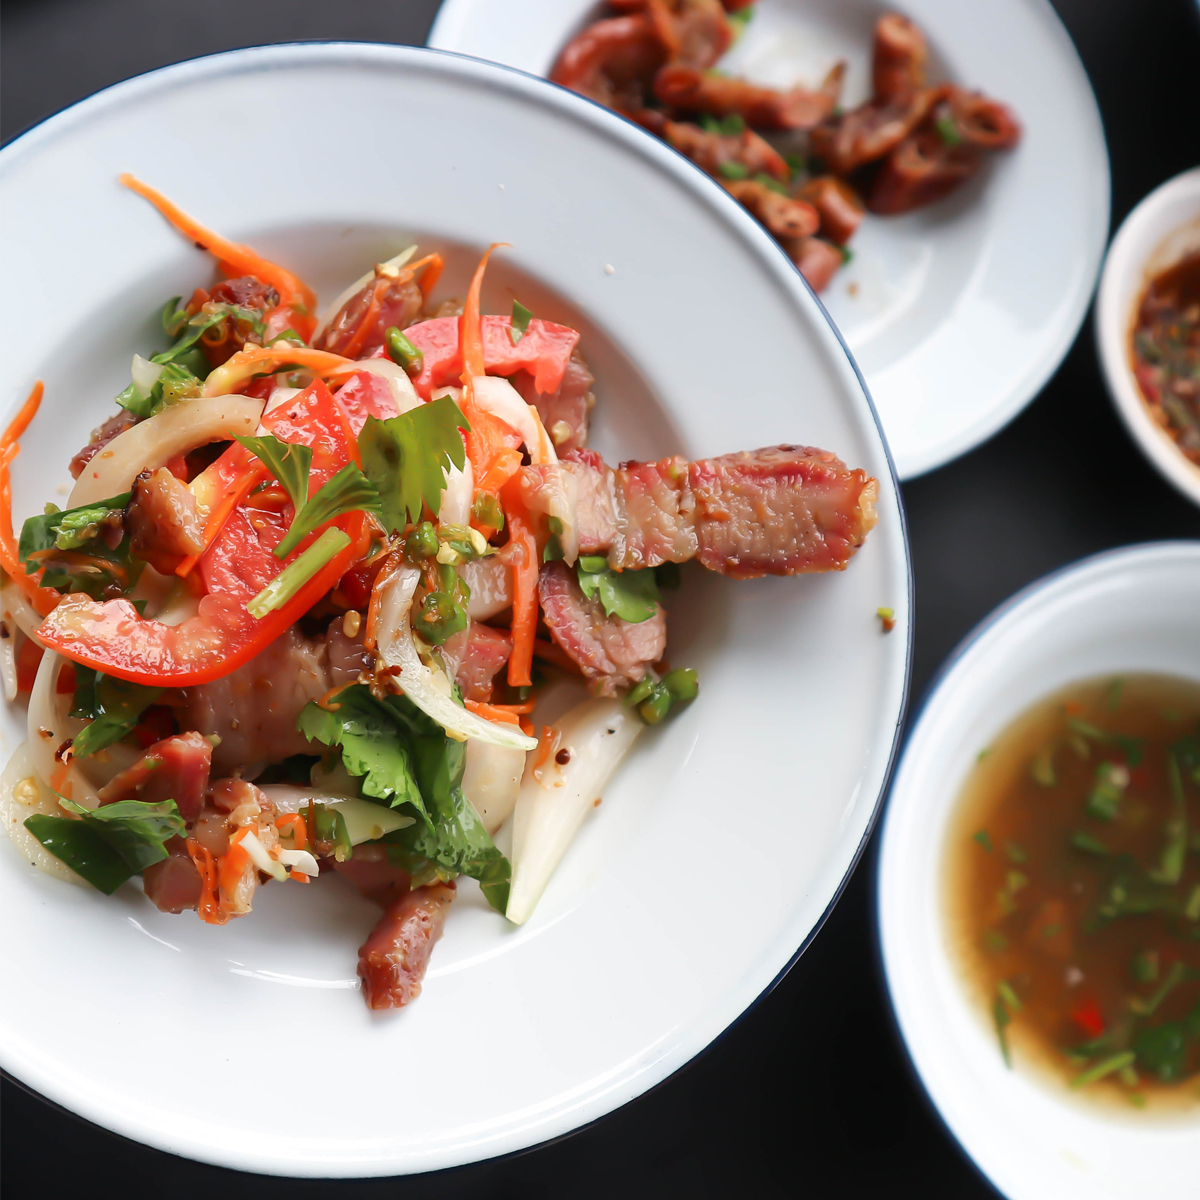 Vietnamese Pork Steak Salad